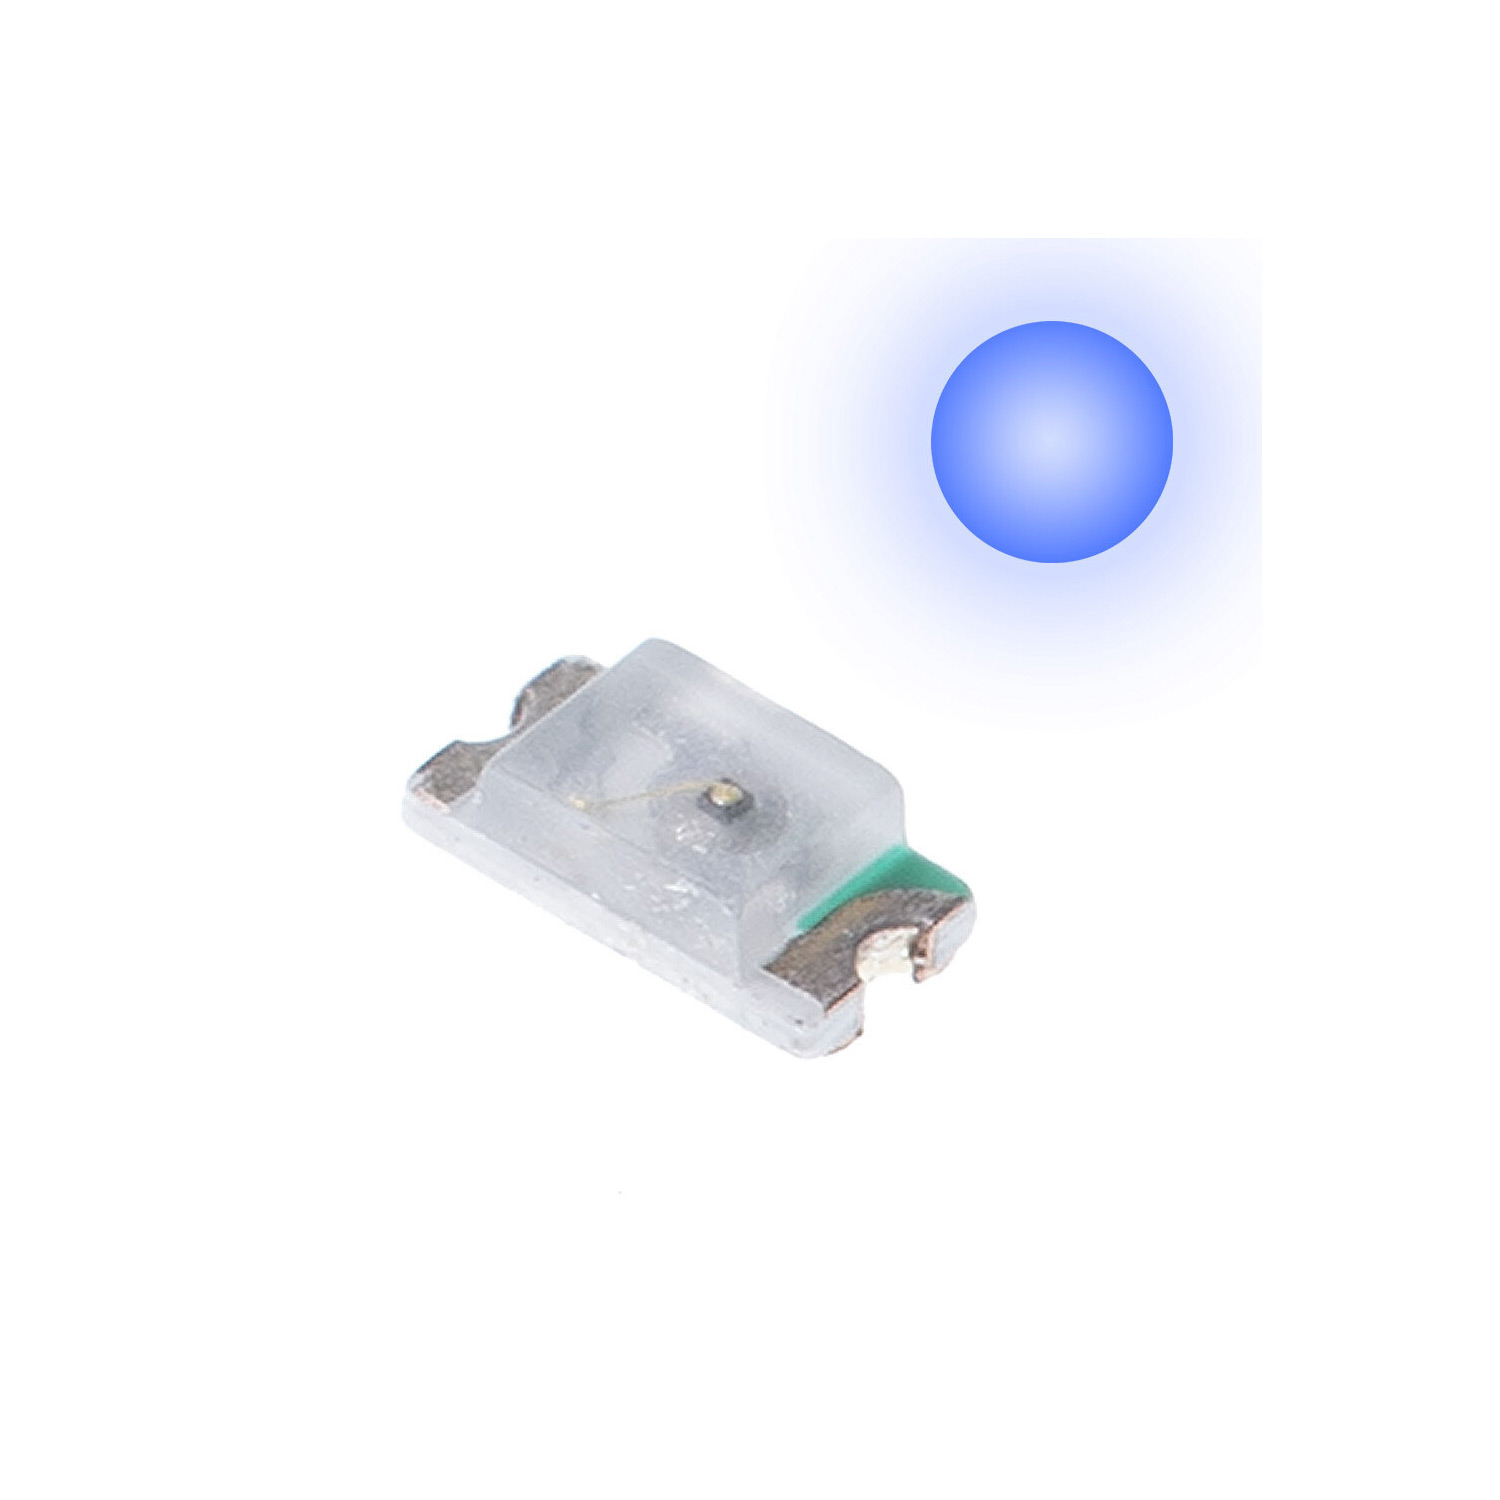 2 x SMD LED (blauw)